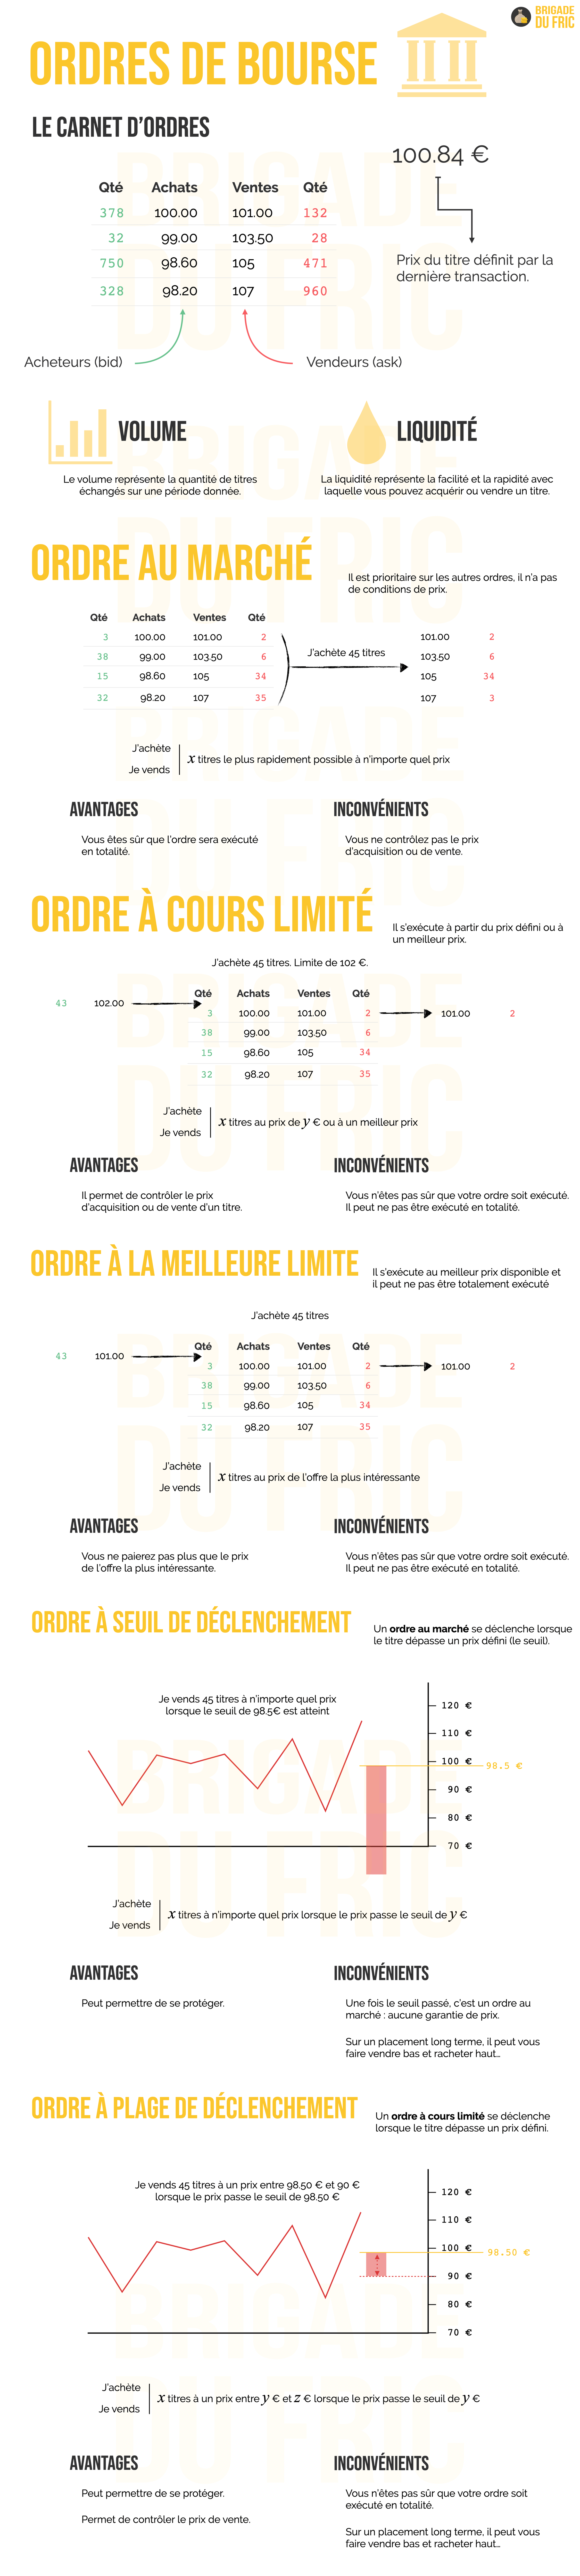 Infographie : Les ordres de bourse